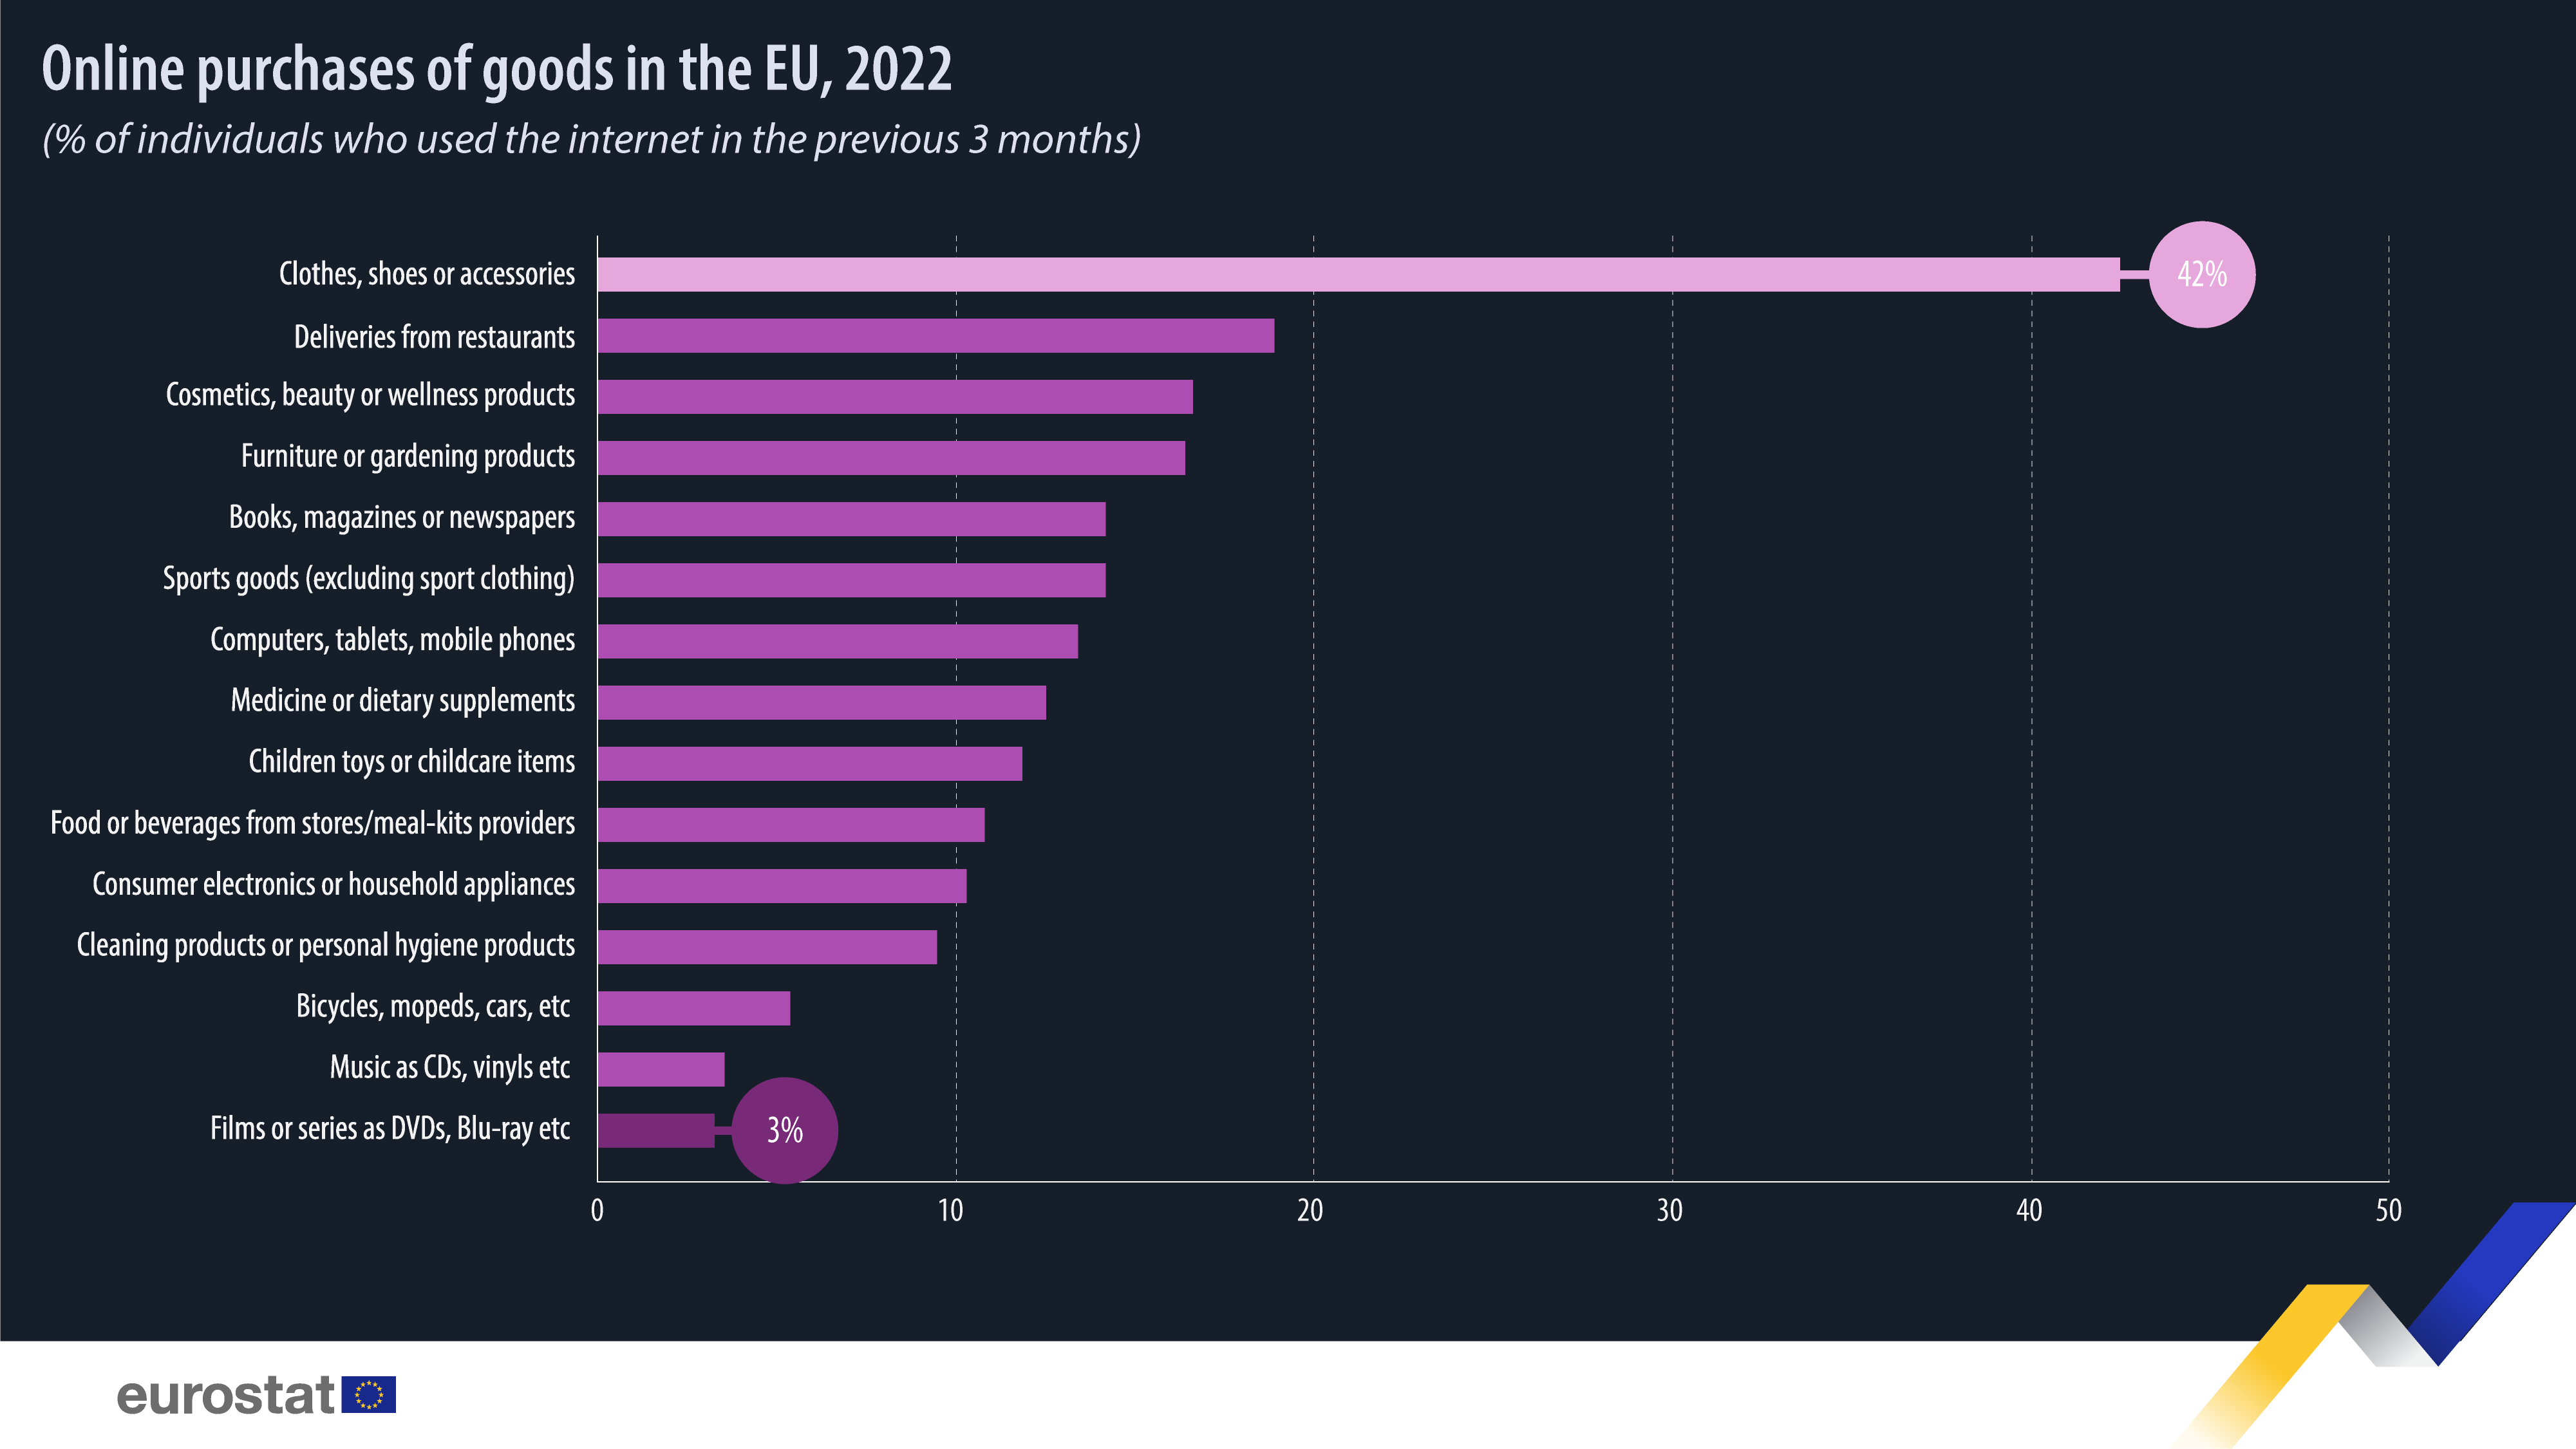 Διαγράμματα ράβδων: Διαδικτυακές αγορές αγαθών στην ΕΕ, % των ατόμων που χρησιμοποίησαν το διαδίκτυο τους προηγούμενους 12 μήνες, 2022